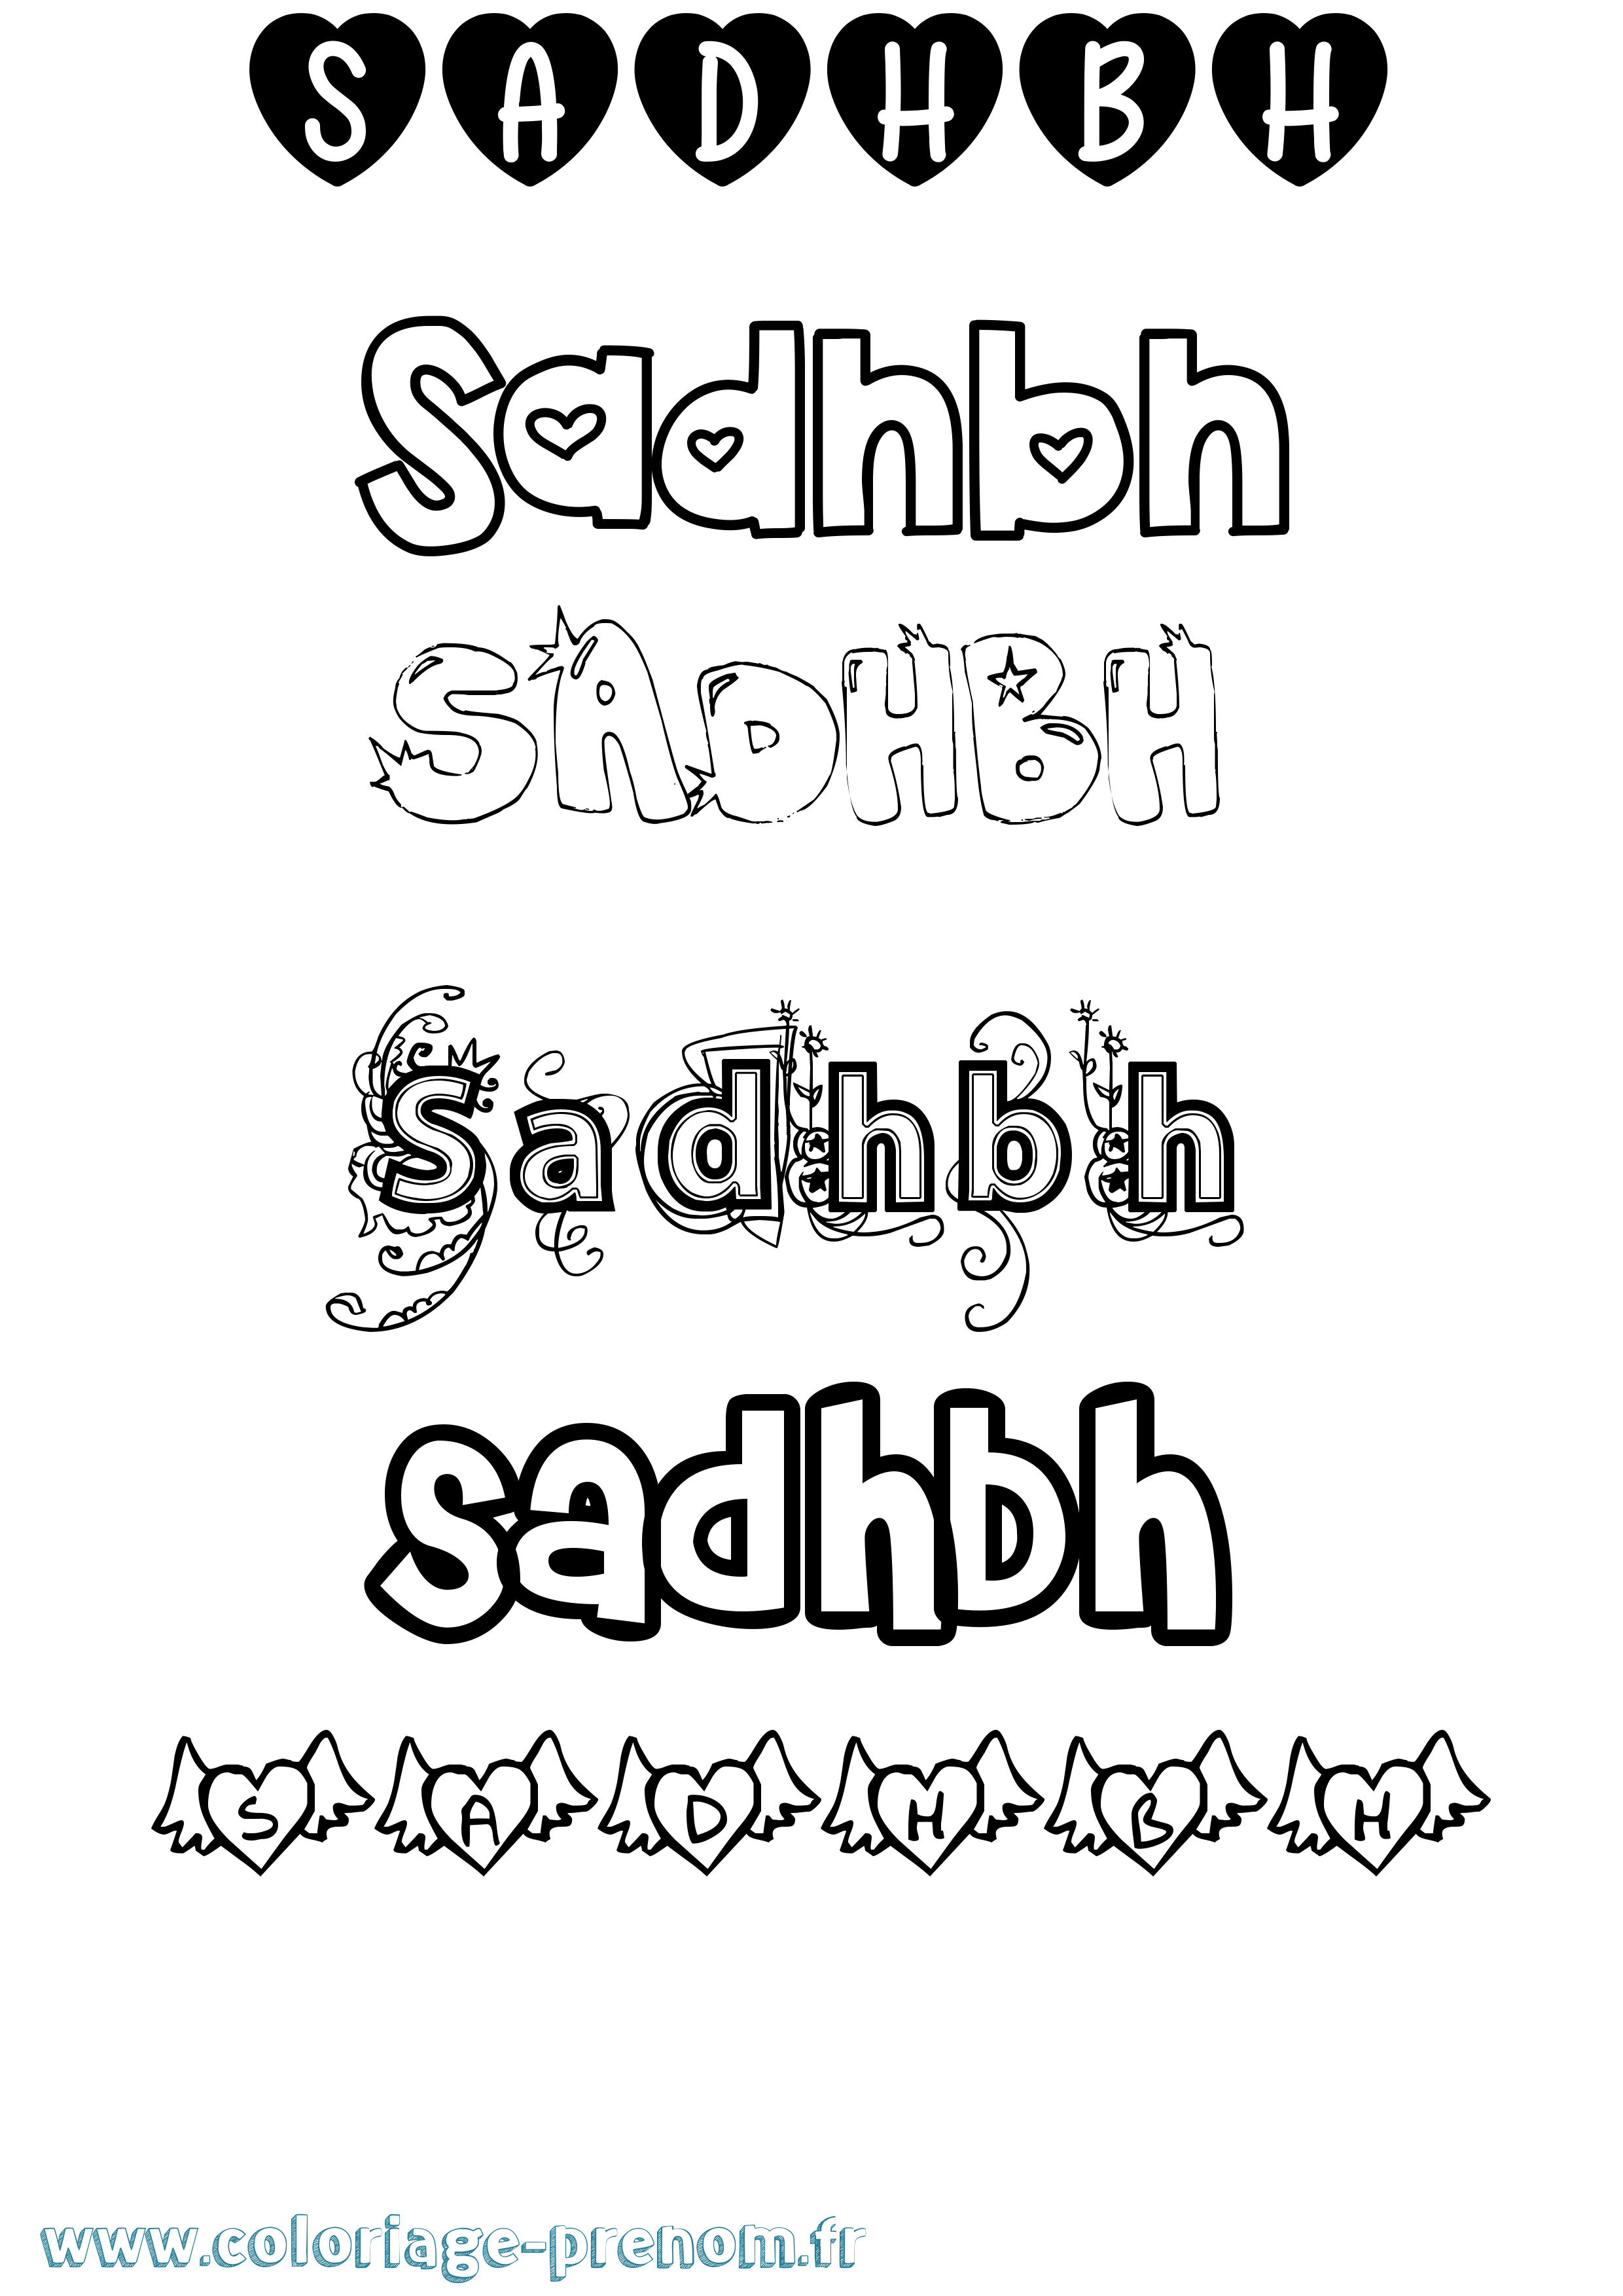 Coloriage prénom Sadhbh Girly